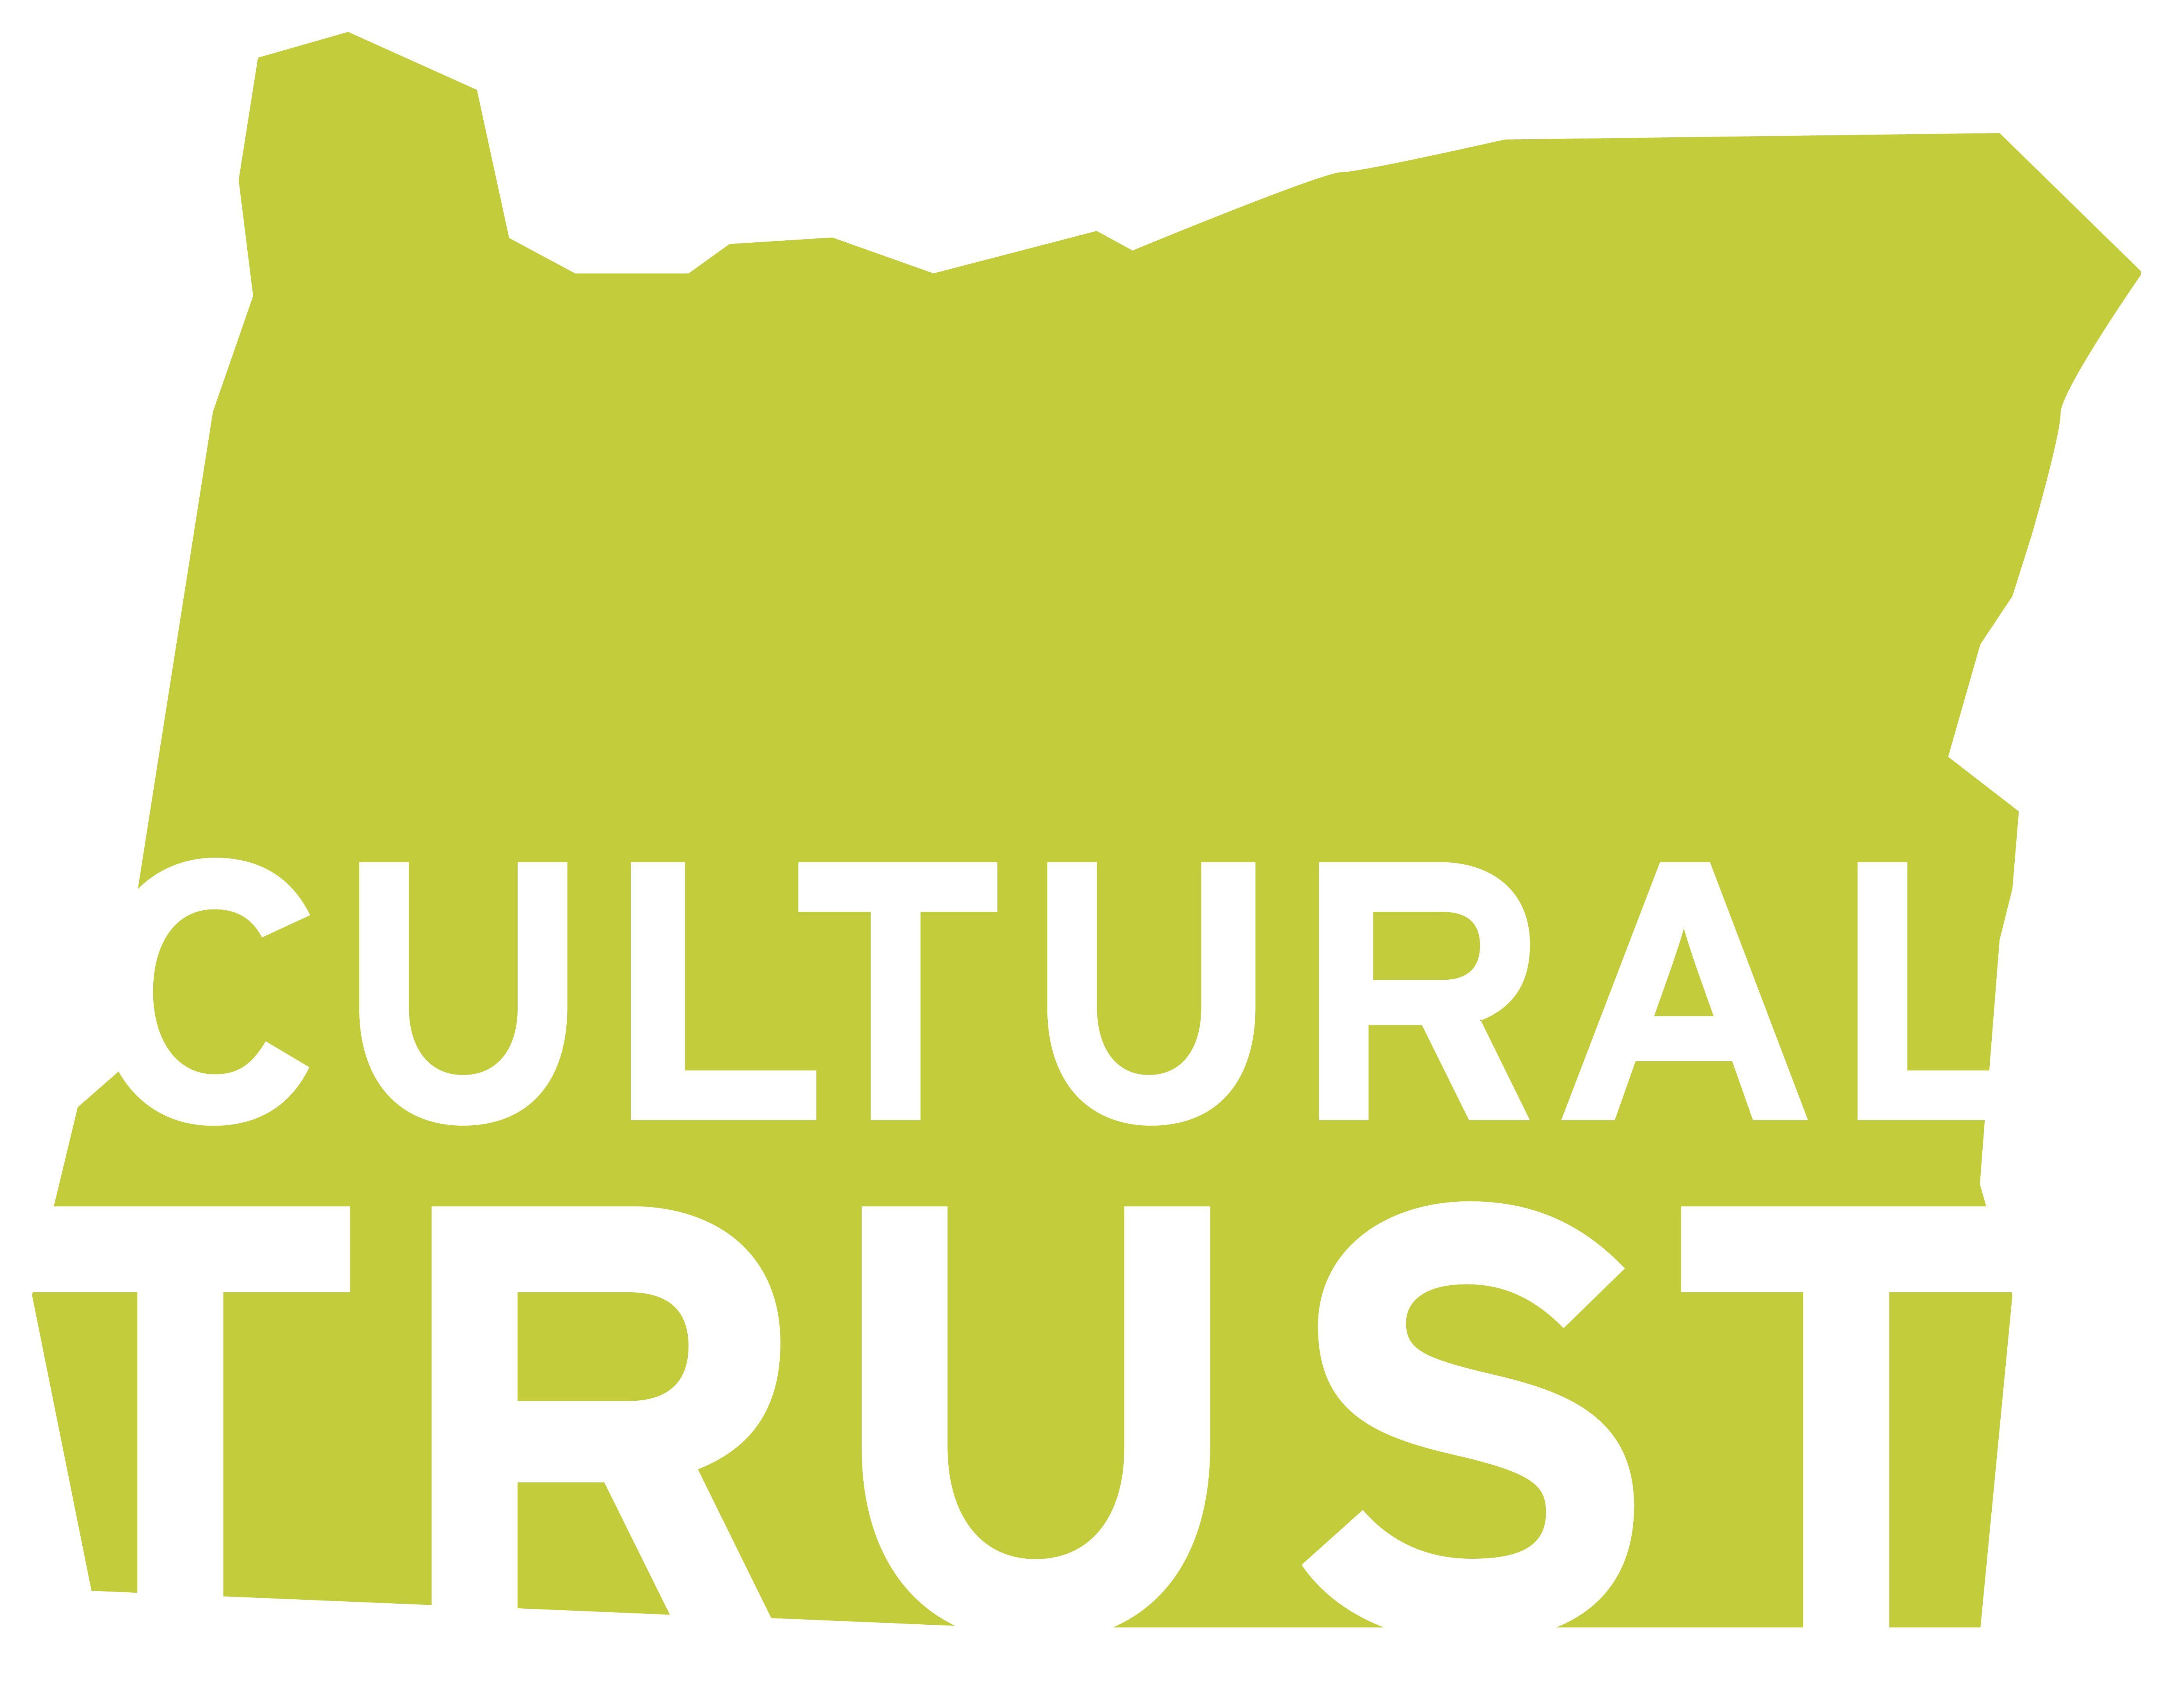 Oregon's Logo - Toolkit Cultural TrustOregon Cultural Trust